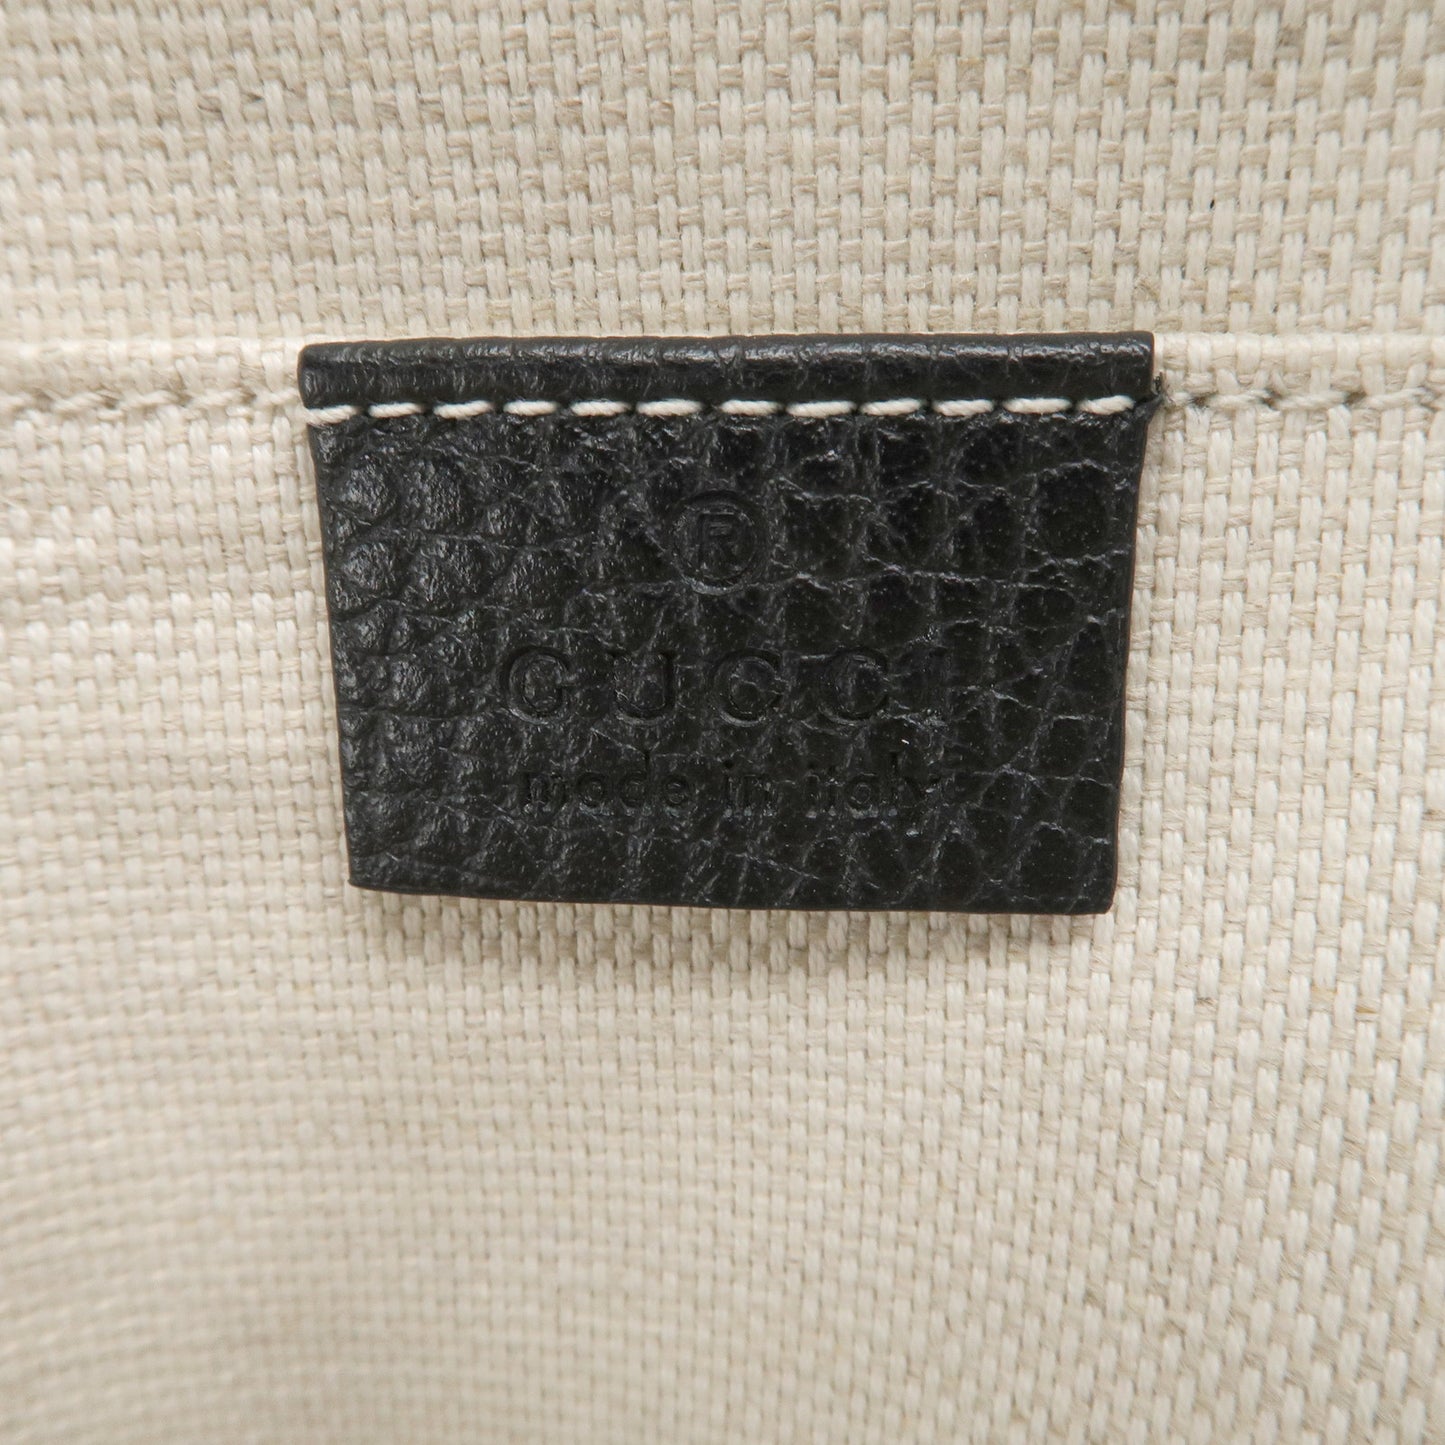 GUCCI SOHO Interlocking G Leather Backpack Black 536192